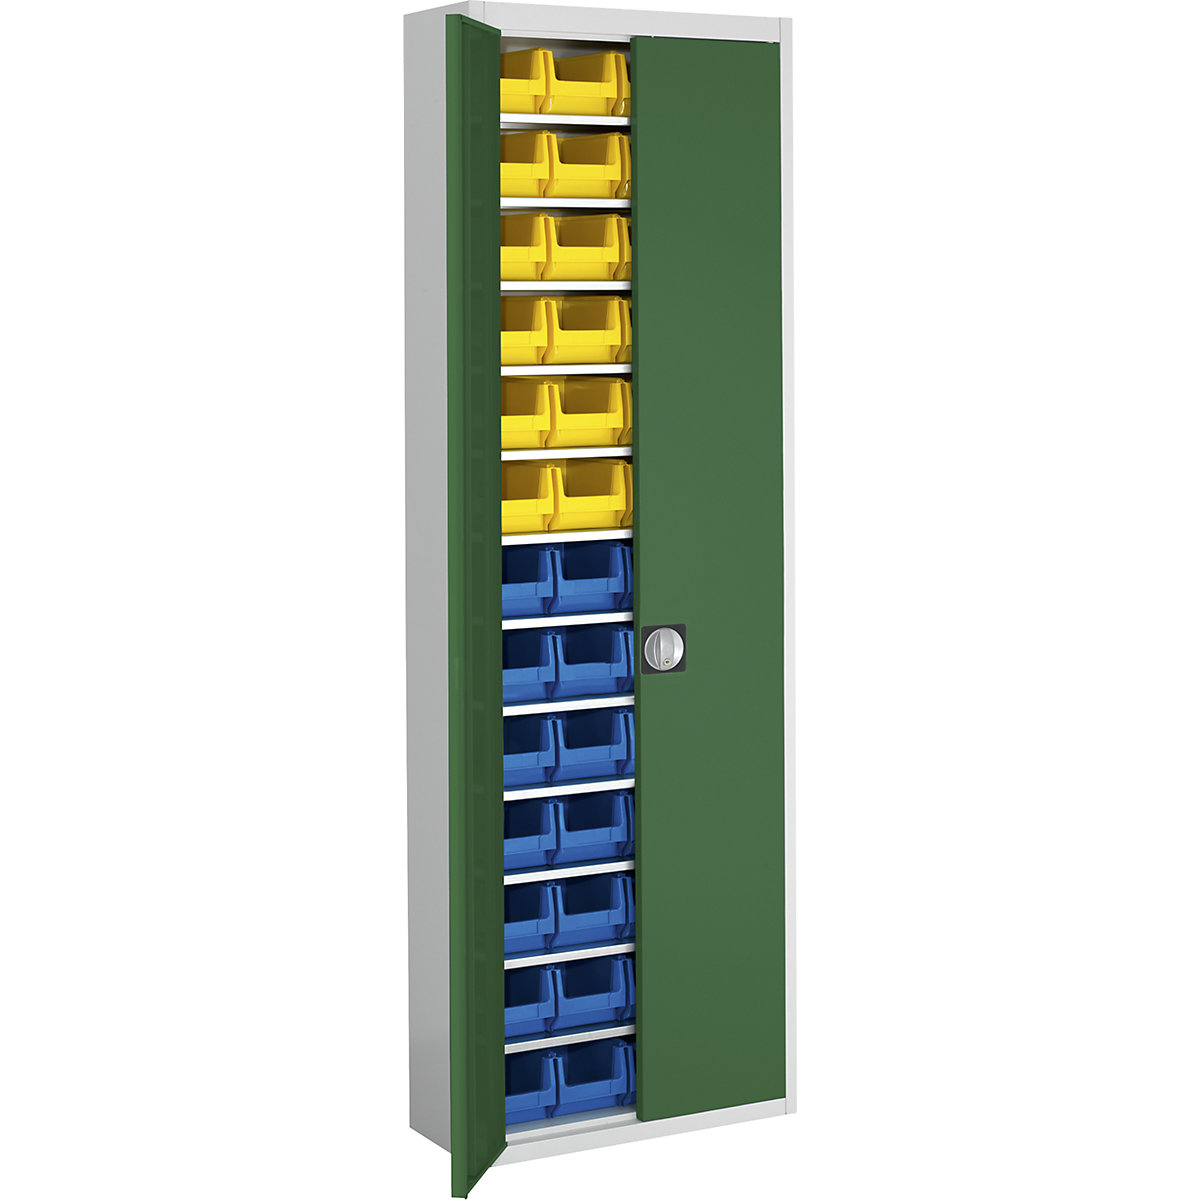 Armário de armazém com caixas de armazenagem à vista – mauser, AxLxP 2150 x 680 x 280 mm, duas cores, corpo em cinzento, portas em verde, 52 caixas-9